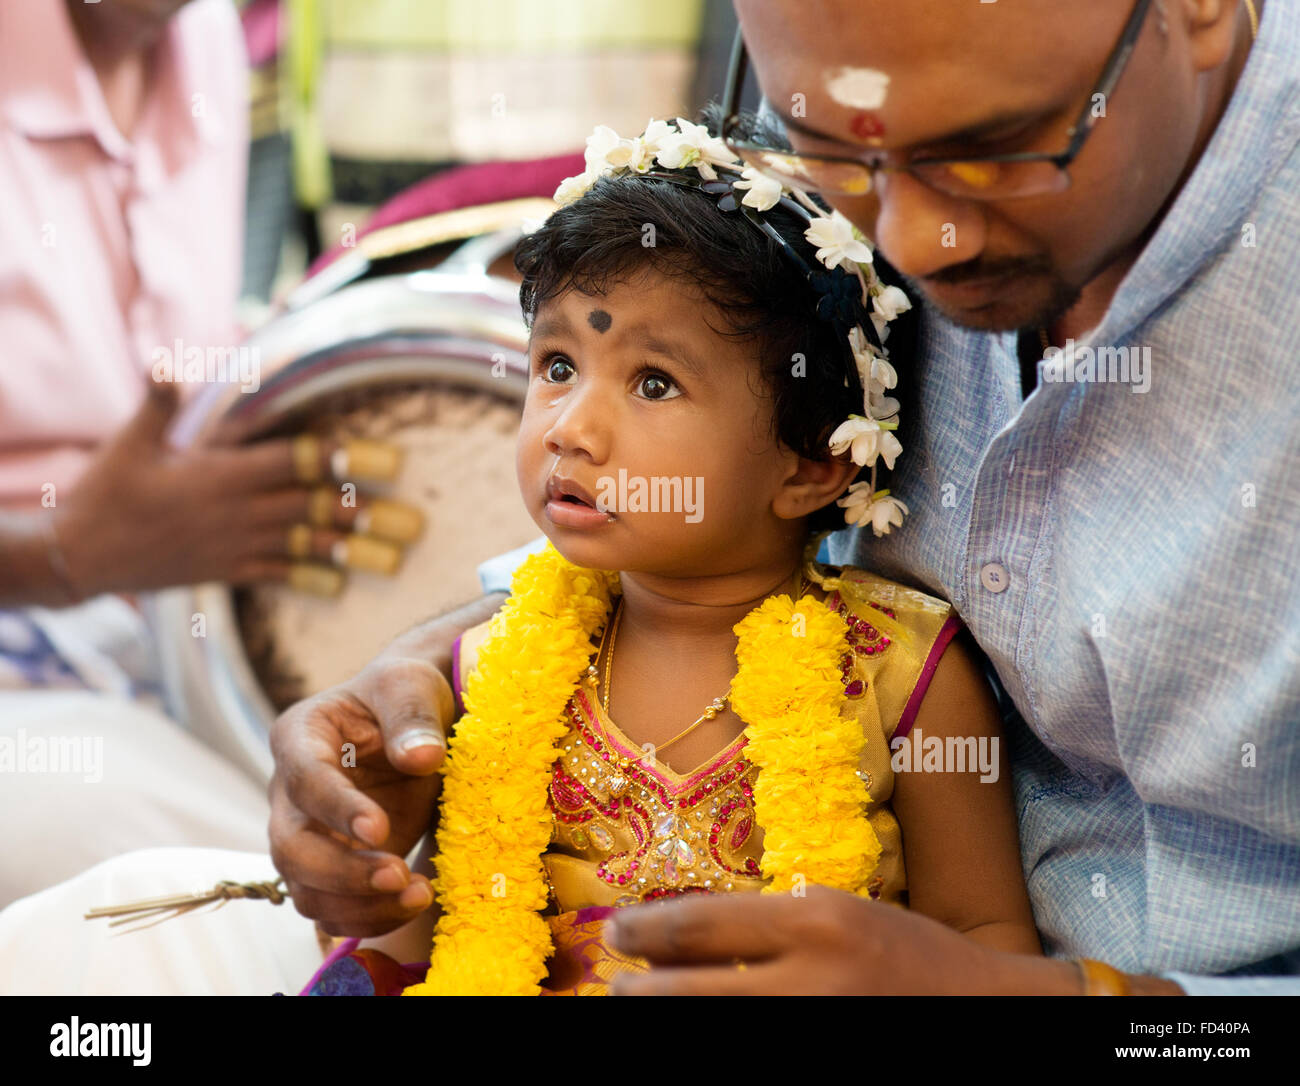 Babymädchen erhielt Gebete aus den Karnvedh Ereignissen. Traditionelle indische Hindus Ohrlochstechen Zeremonie. Indien spezielle Rituale. Stockfoto